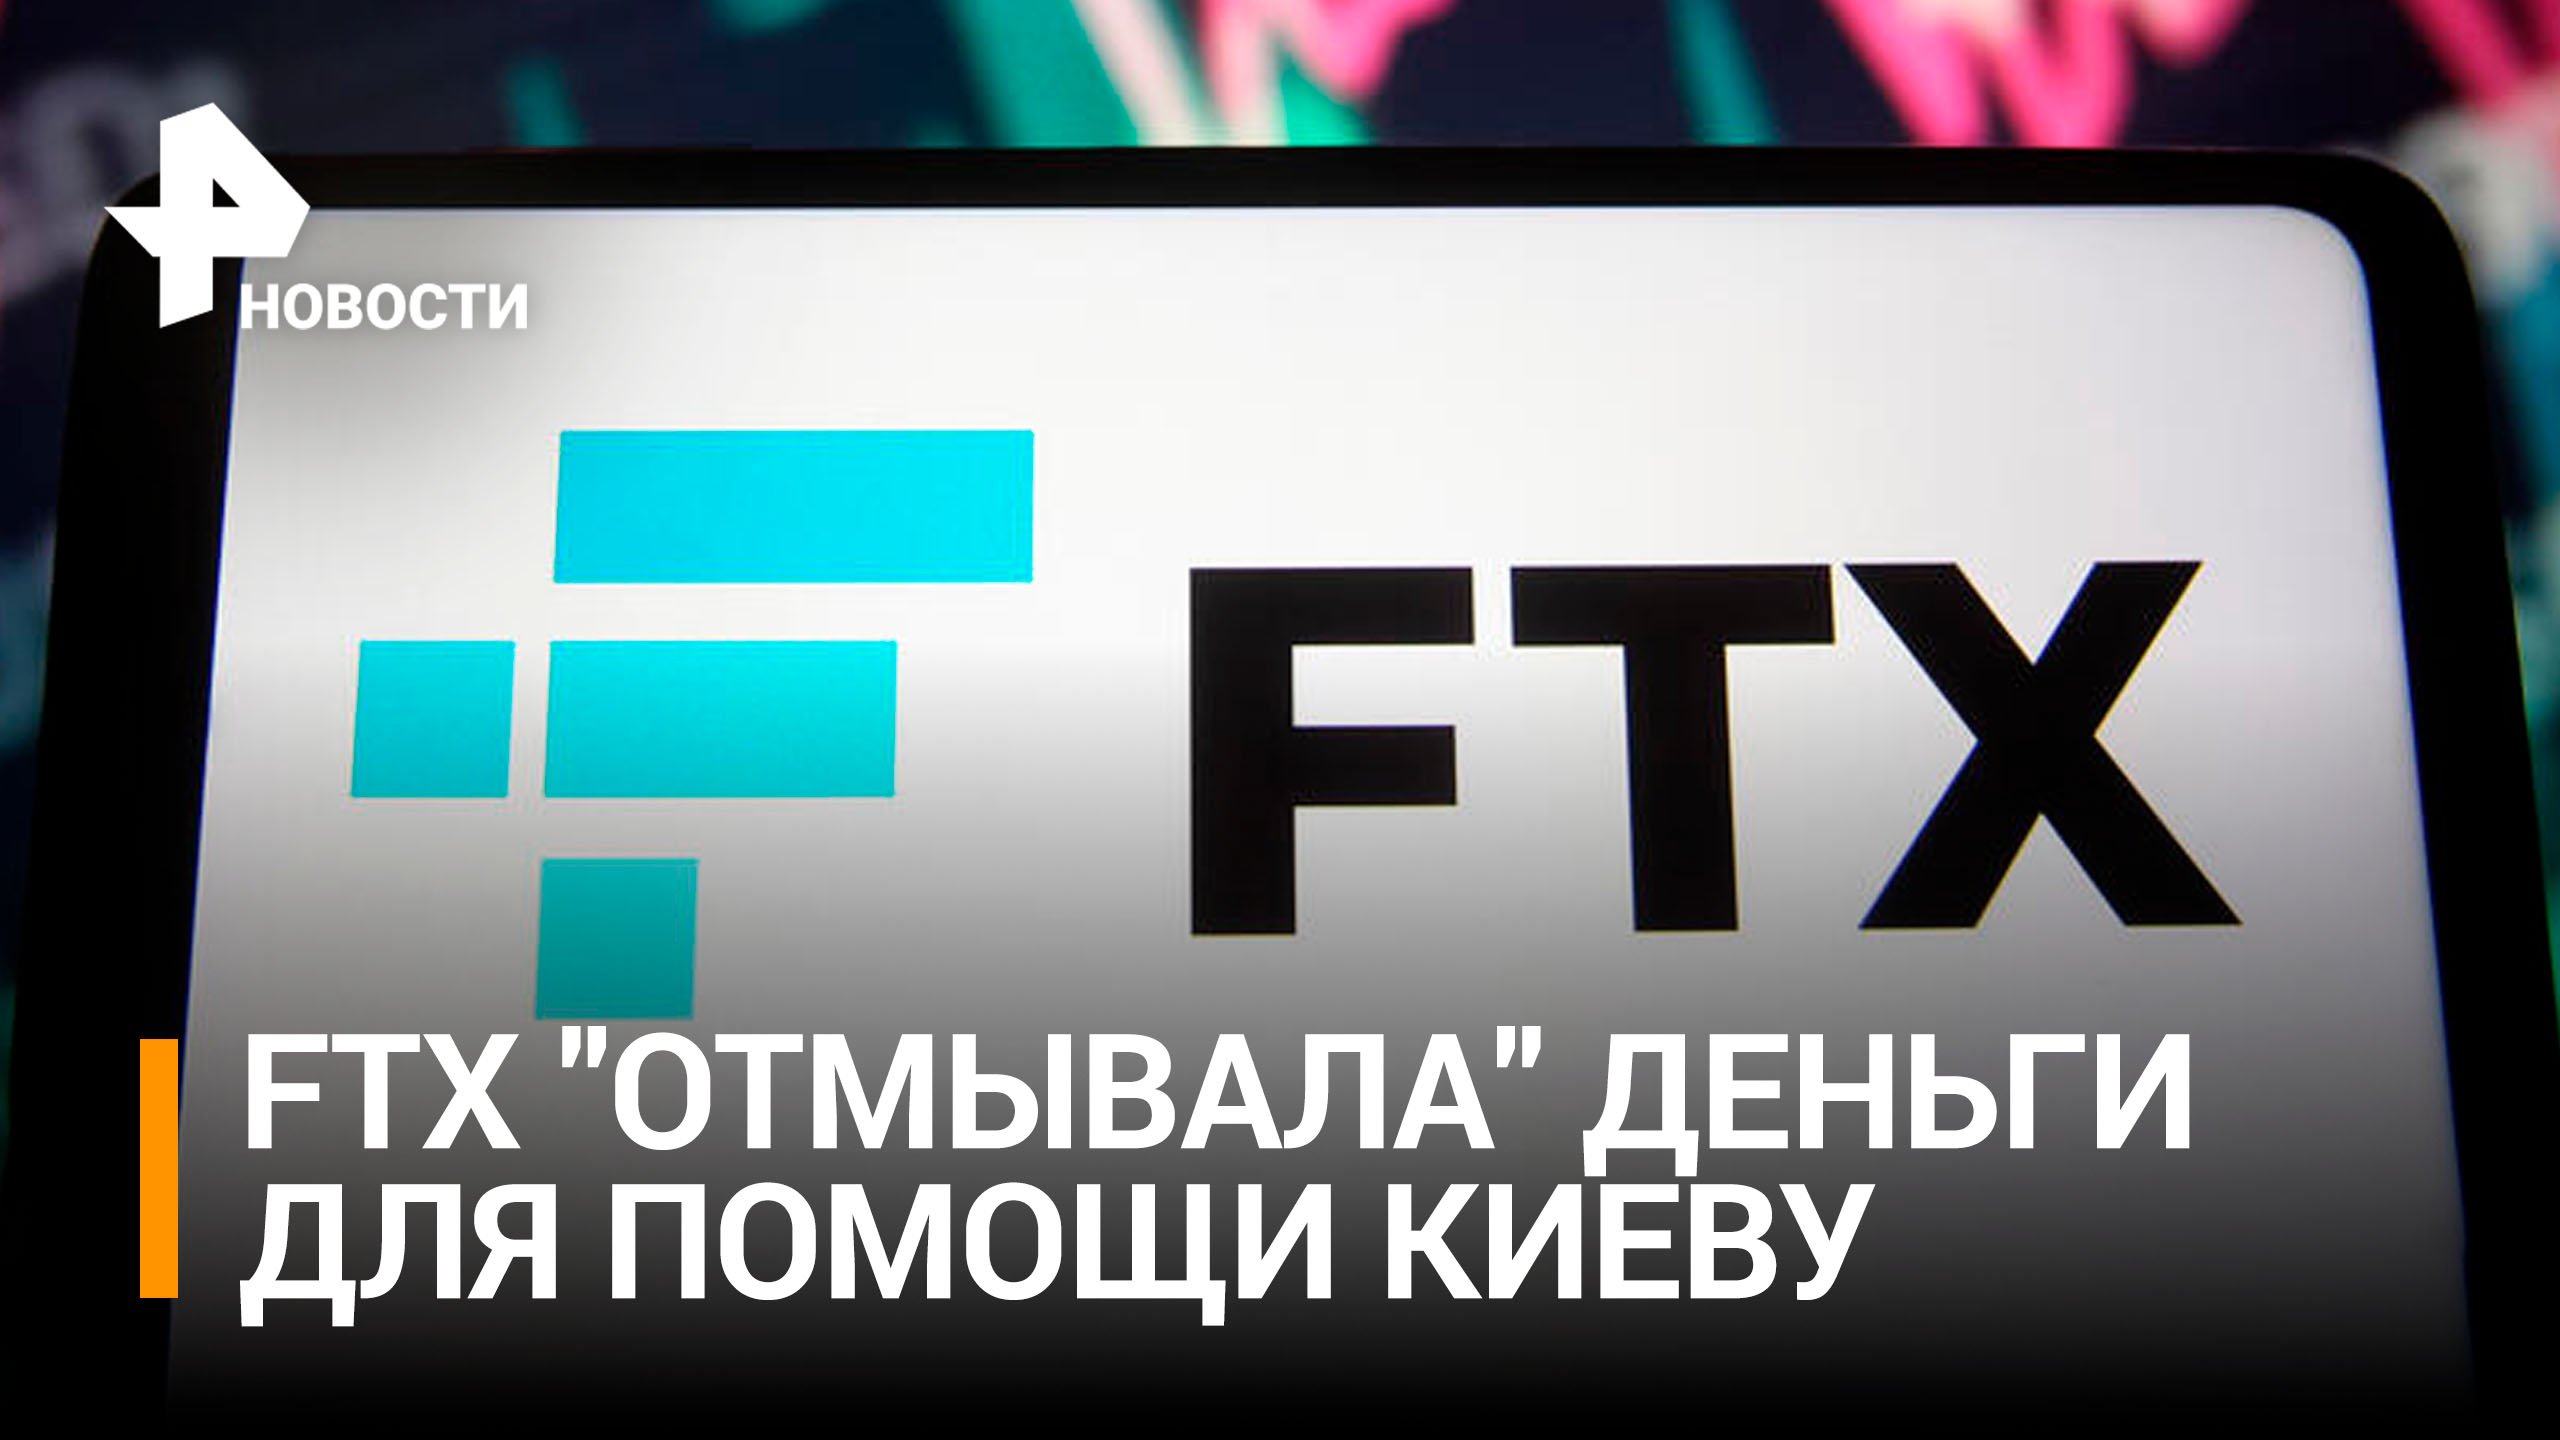 Обанкротившаяся криптобиржа FTX "отмывала" деньги США для помощи Киеву / РЕН Новости